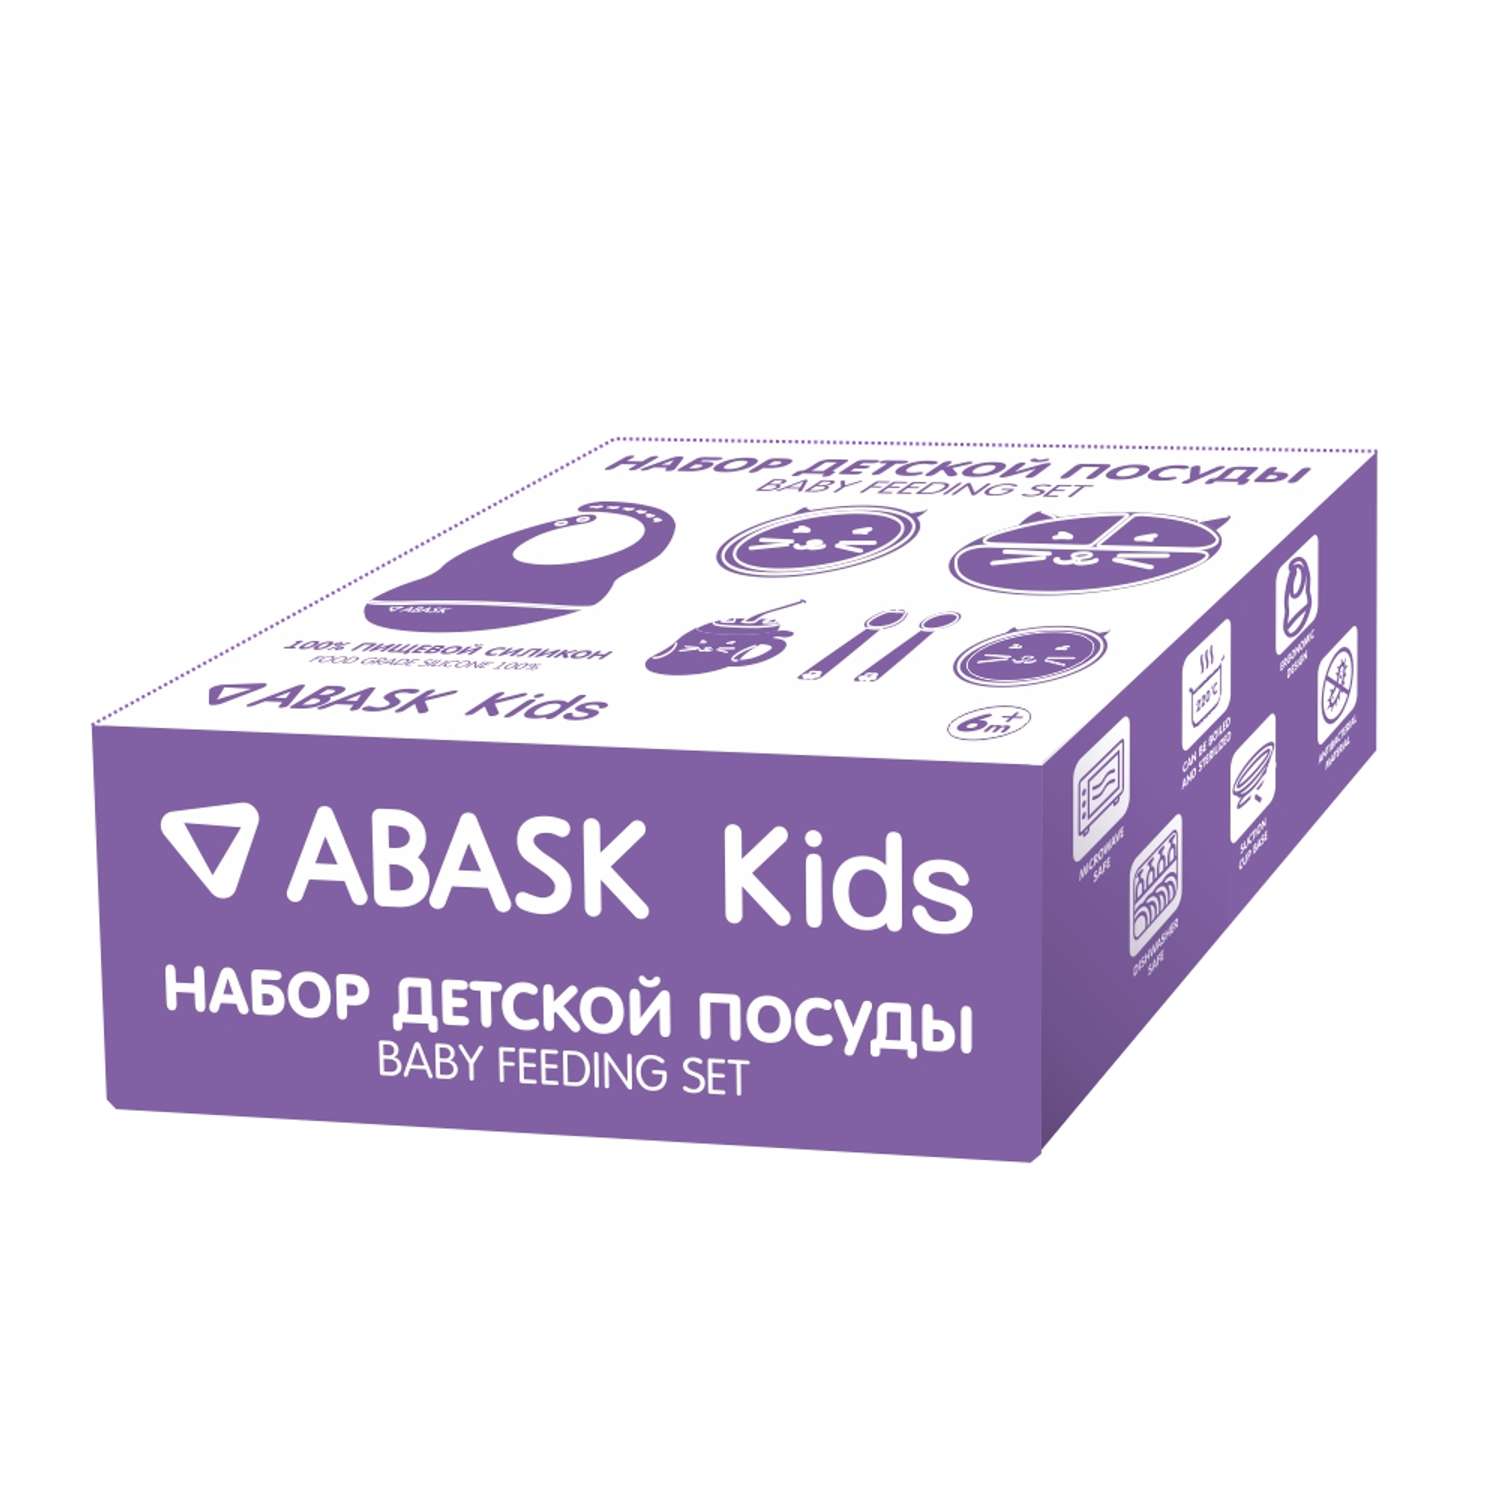 Набор детской посуды ABASK BLACKBPIE 7 предметов - фото 4